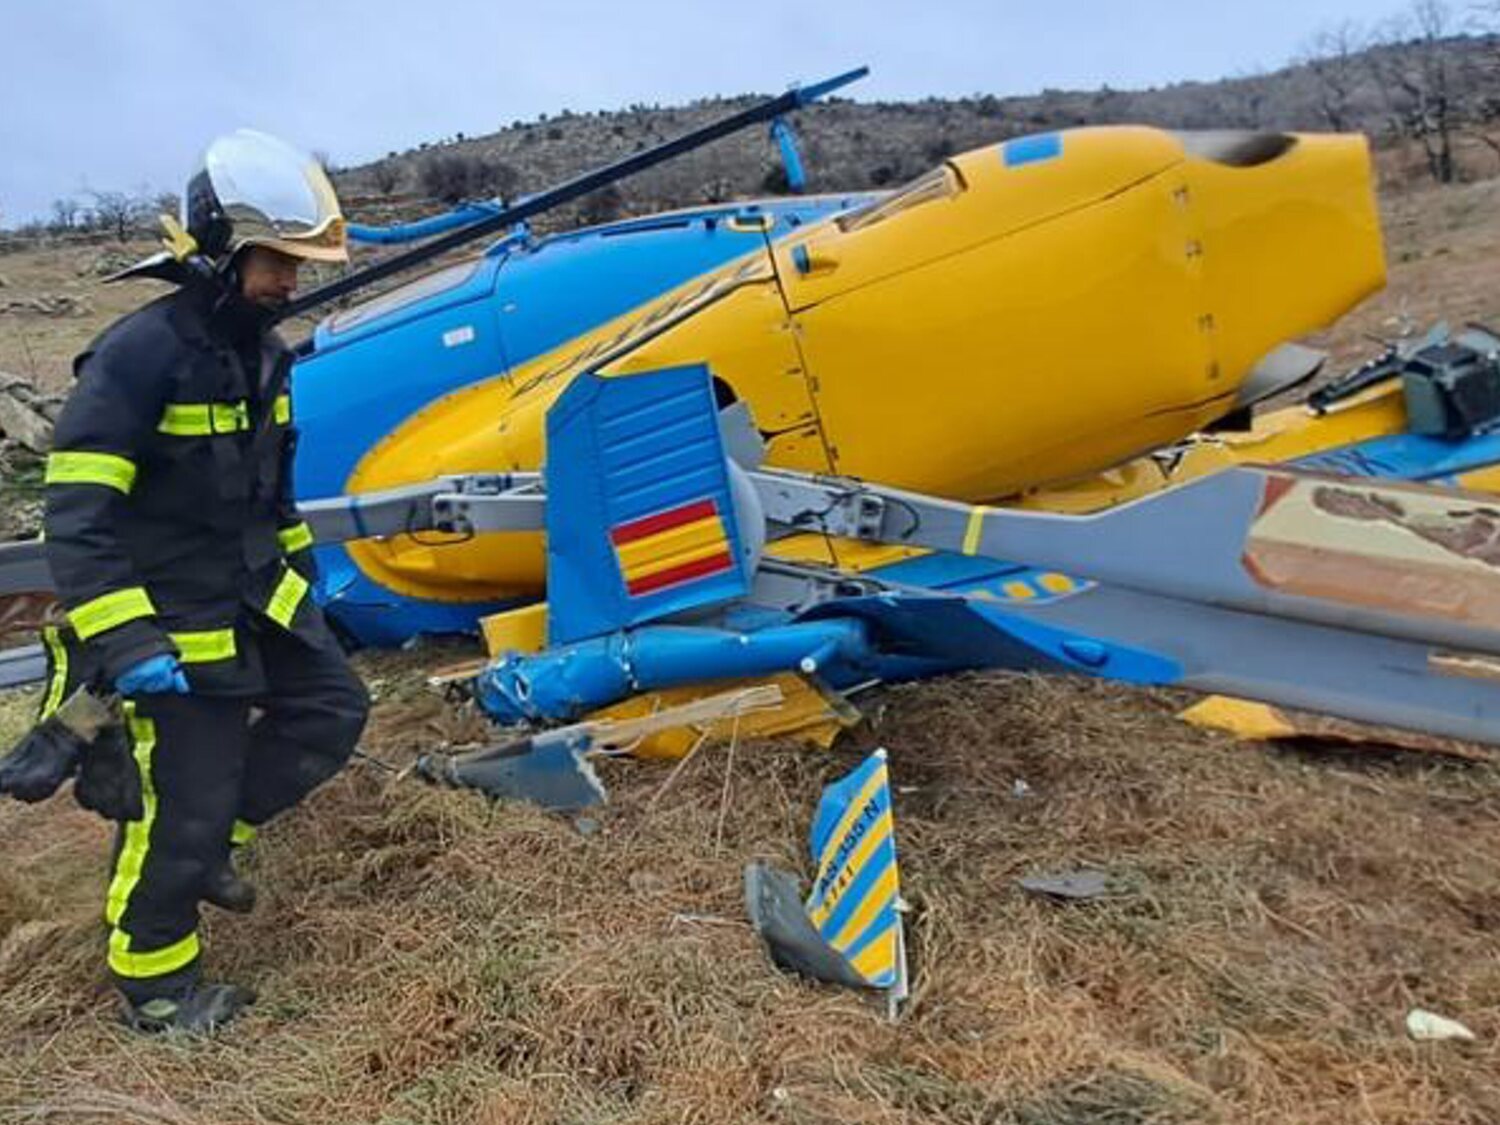 Queda en libertad el piloto del helicóptero siniestrado de la DGT que dio positivo en cocaína y metanfetaminas